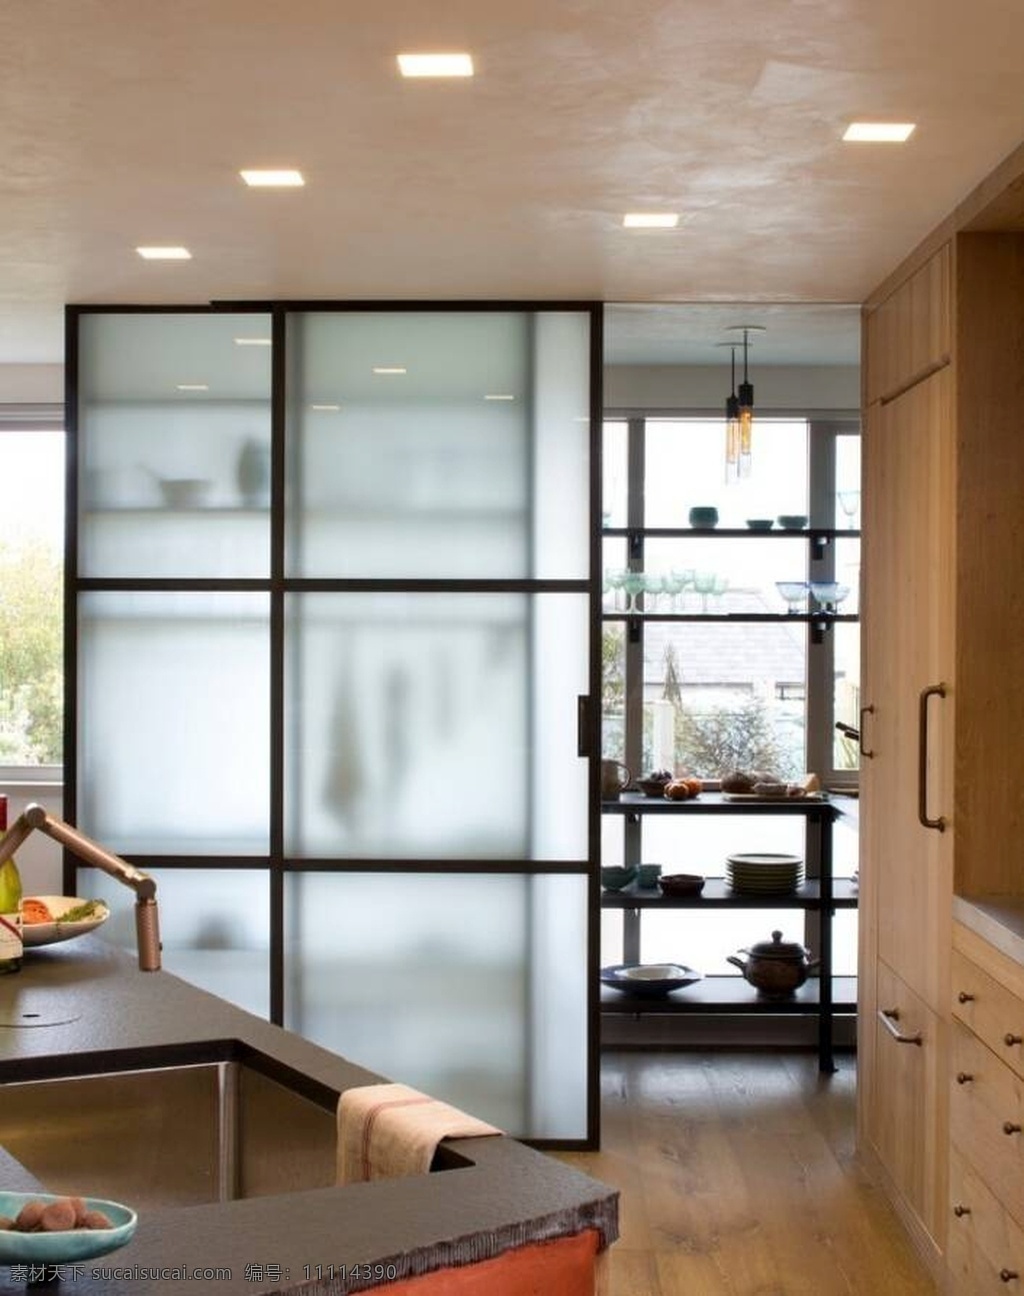 简约 风格 厨房 移门 效果图 现代 玻璃 木色